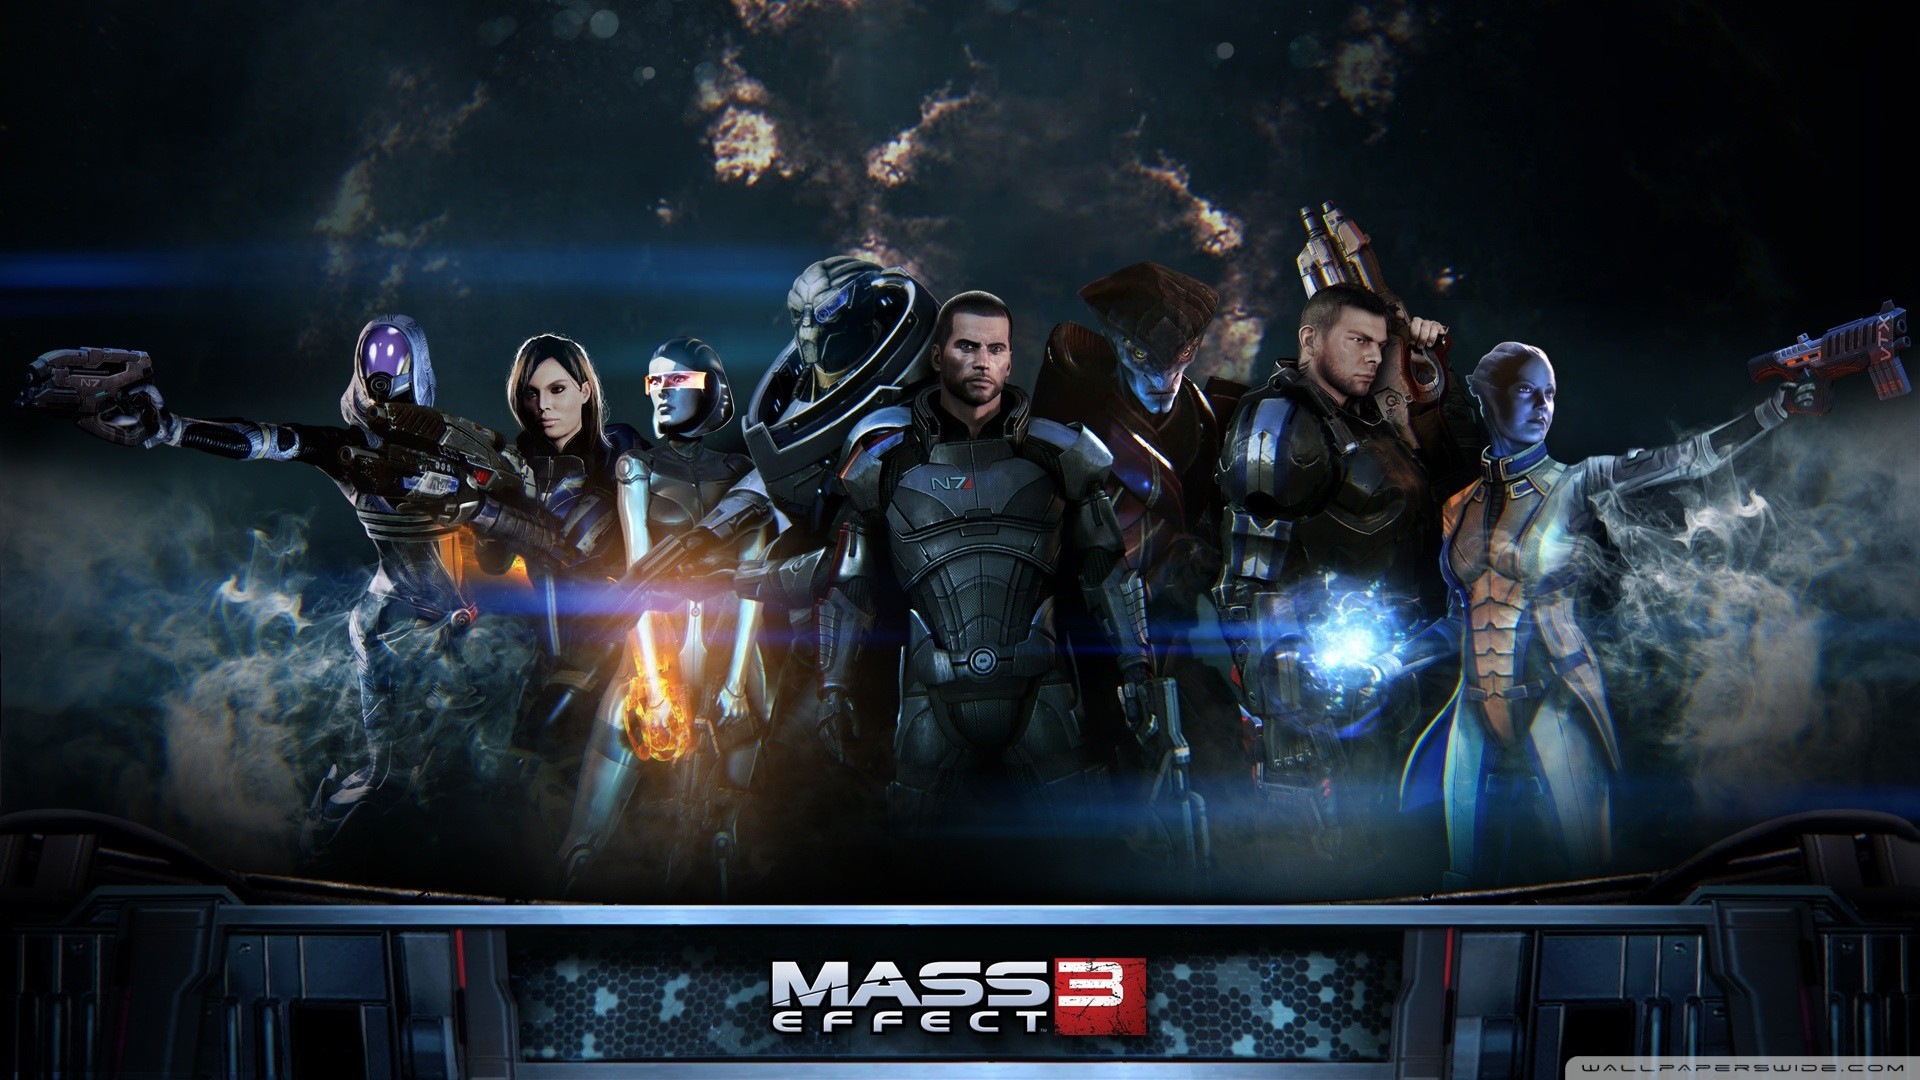 Mass Effect, Video Games, Mass Effect 3 Wallpaper